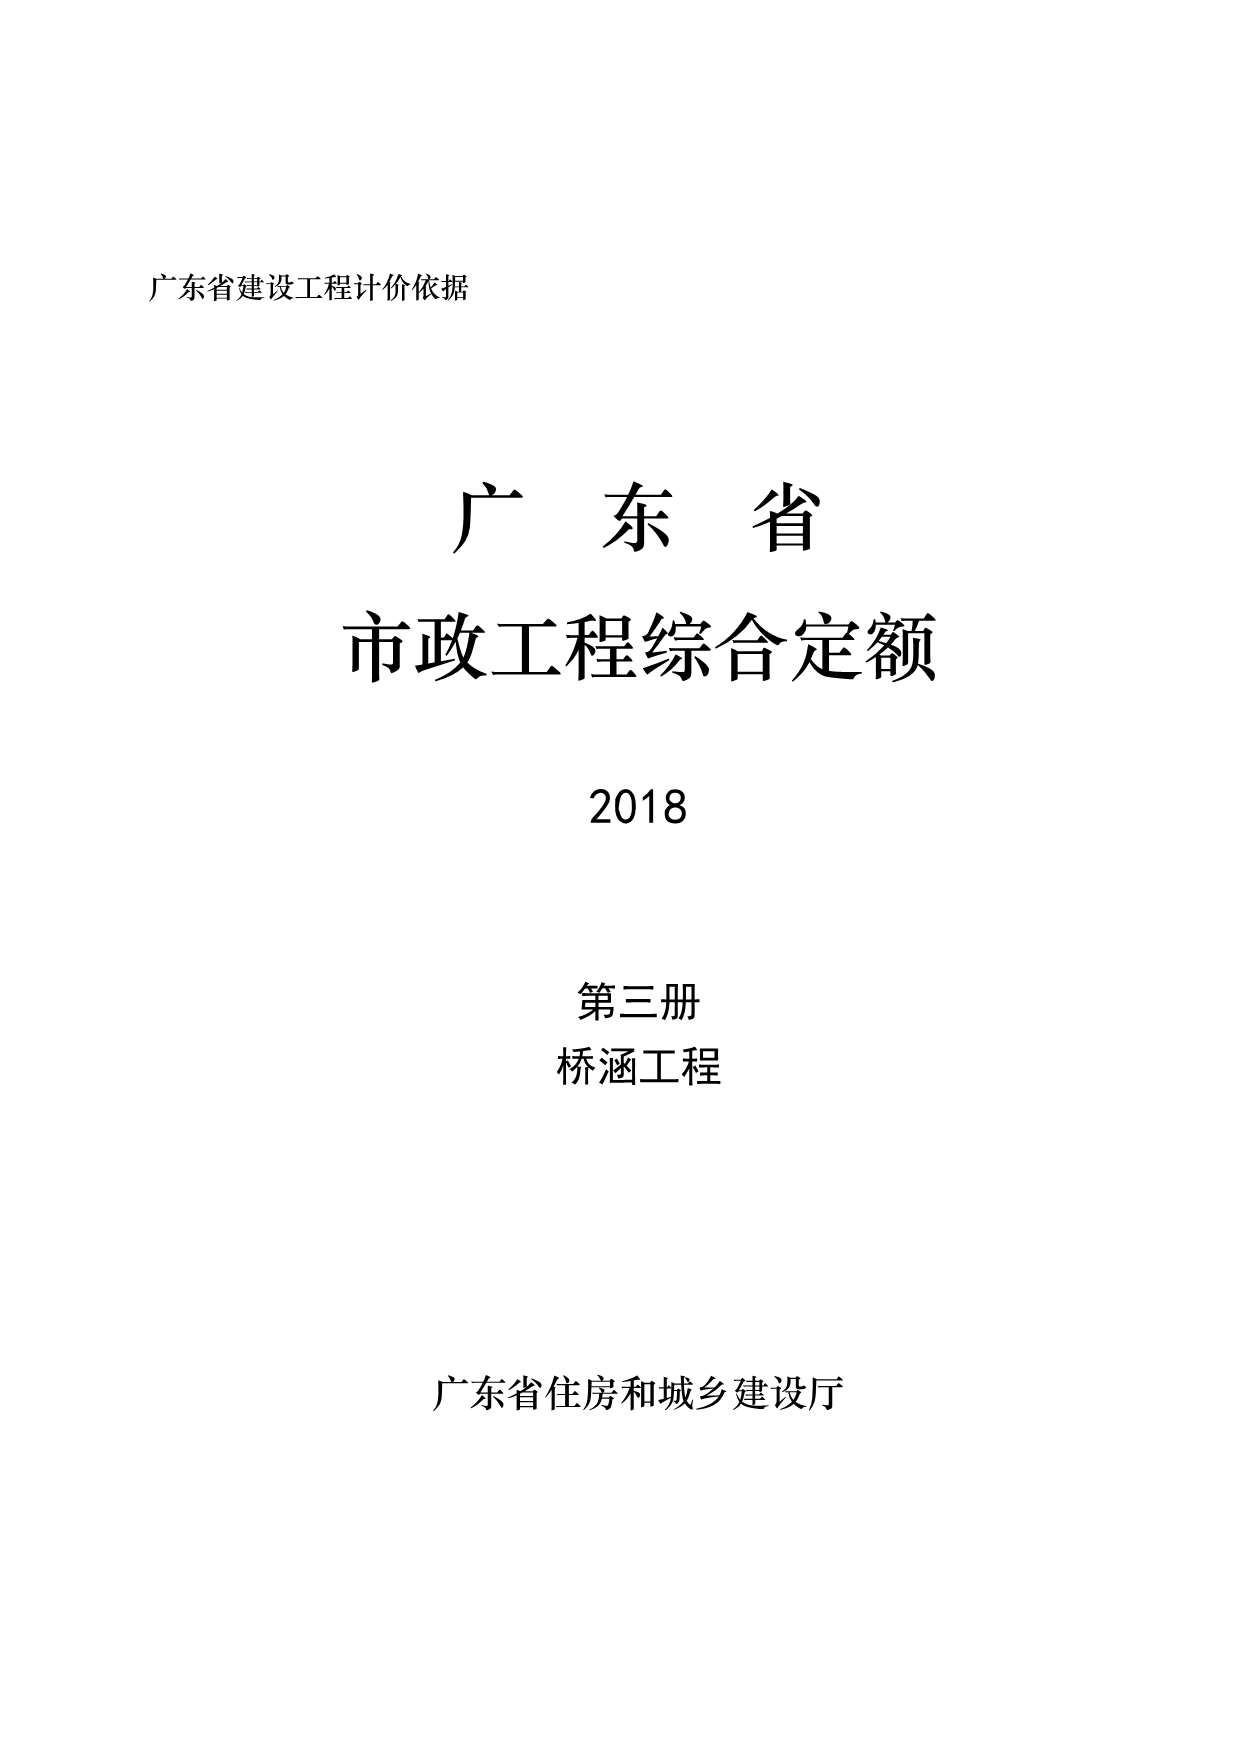 2019广东市政定额D.3桥涵工程